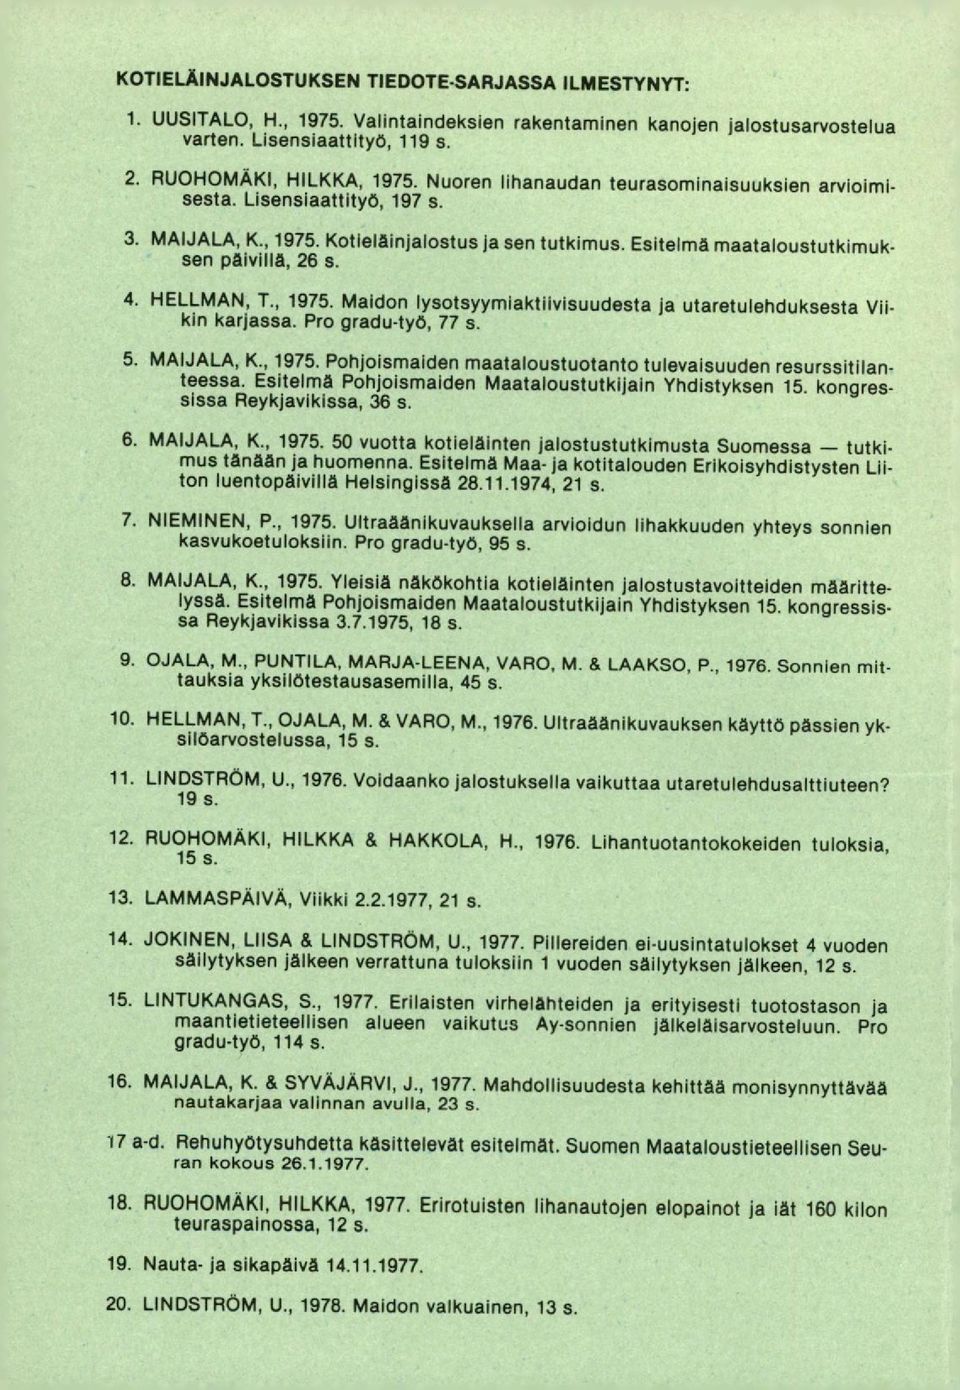 Pro gradu-työ, 77 s. MAIJALA, K., 1975. Pohjoismaiden maataloustuotanto tulevaisuuden resurssitilanteessa. Esitelmä Pohjoismaiden Maataloustutkijain Yhdistyksen 15. kongressissa Reykjavikissa, 36 5.